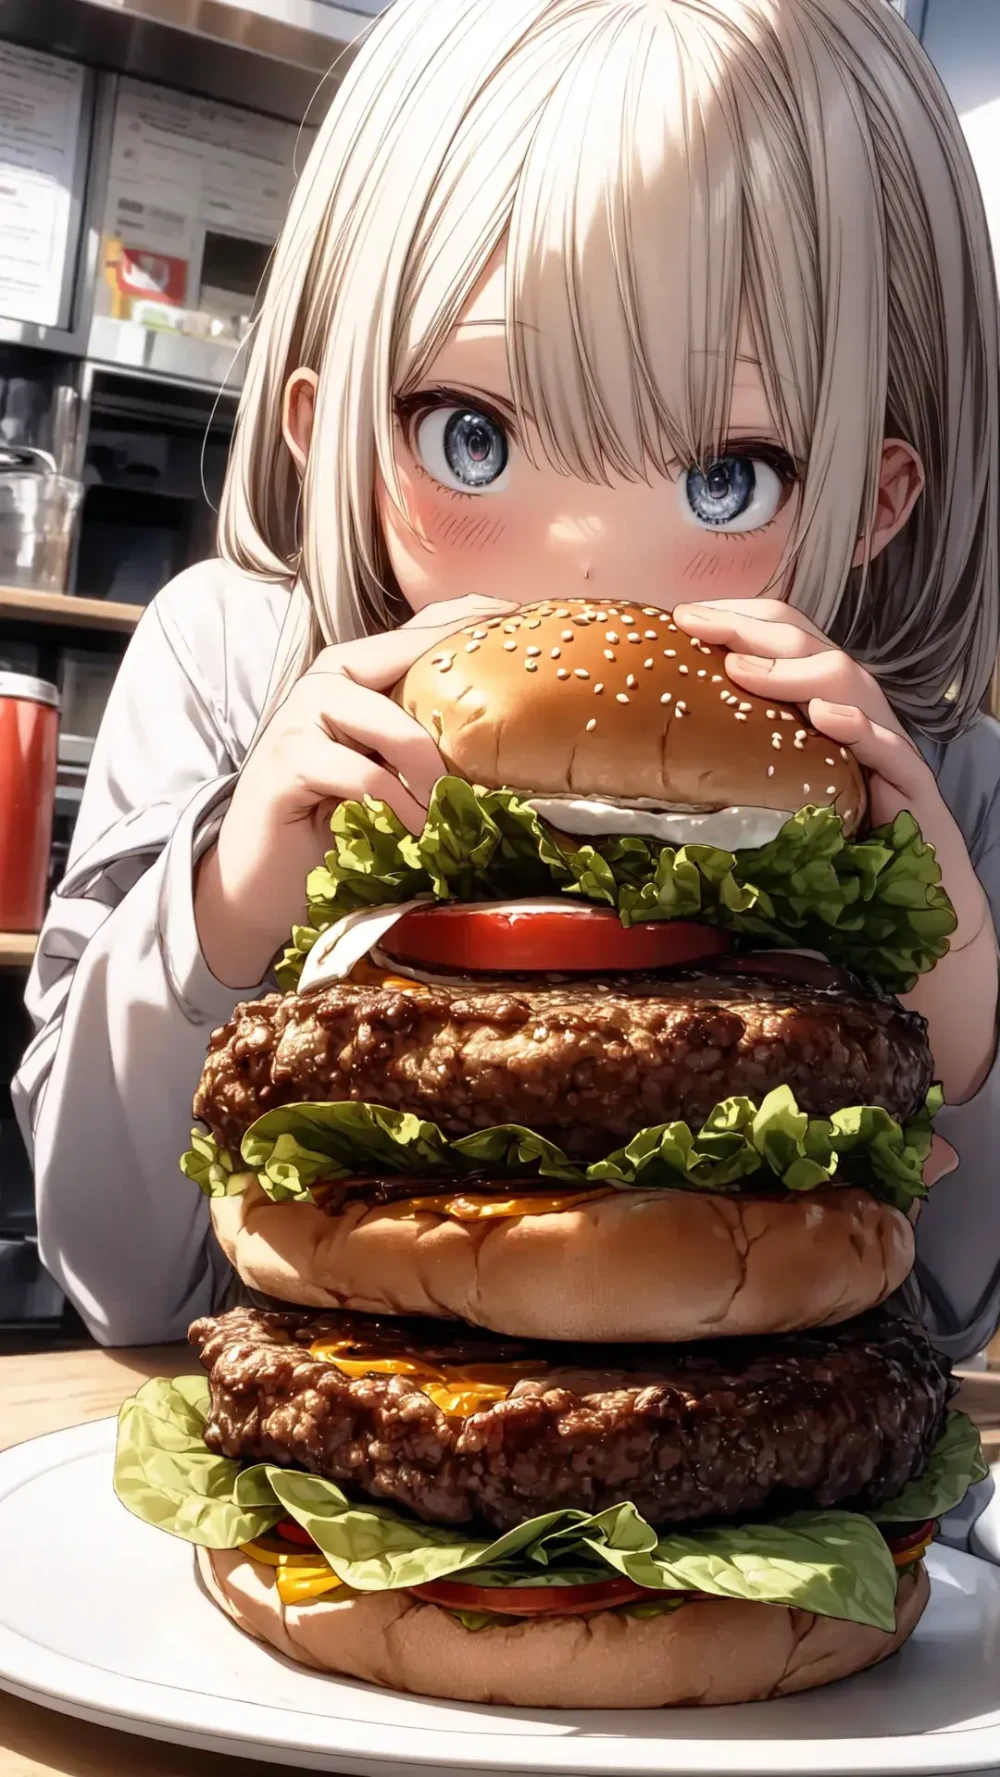 【AIイラスト】ハンバーガーと女の子のAIイラストまとめ【アニメ調】